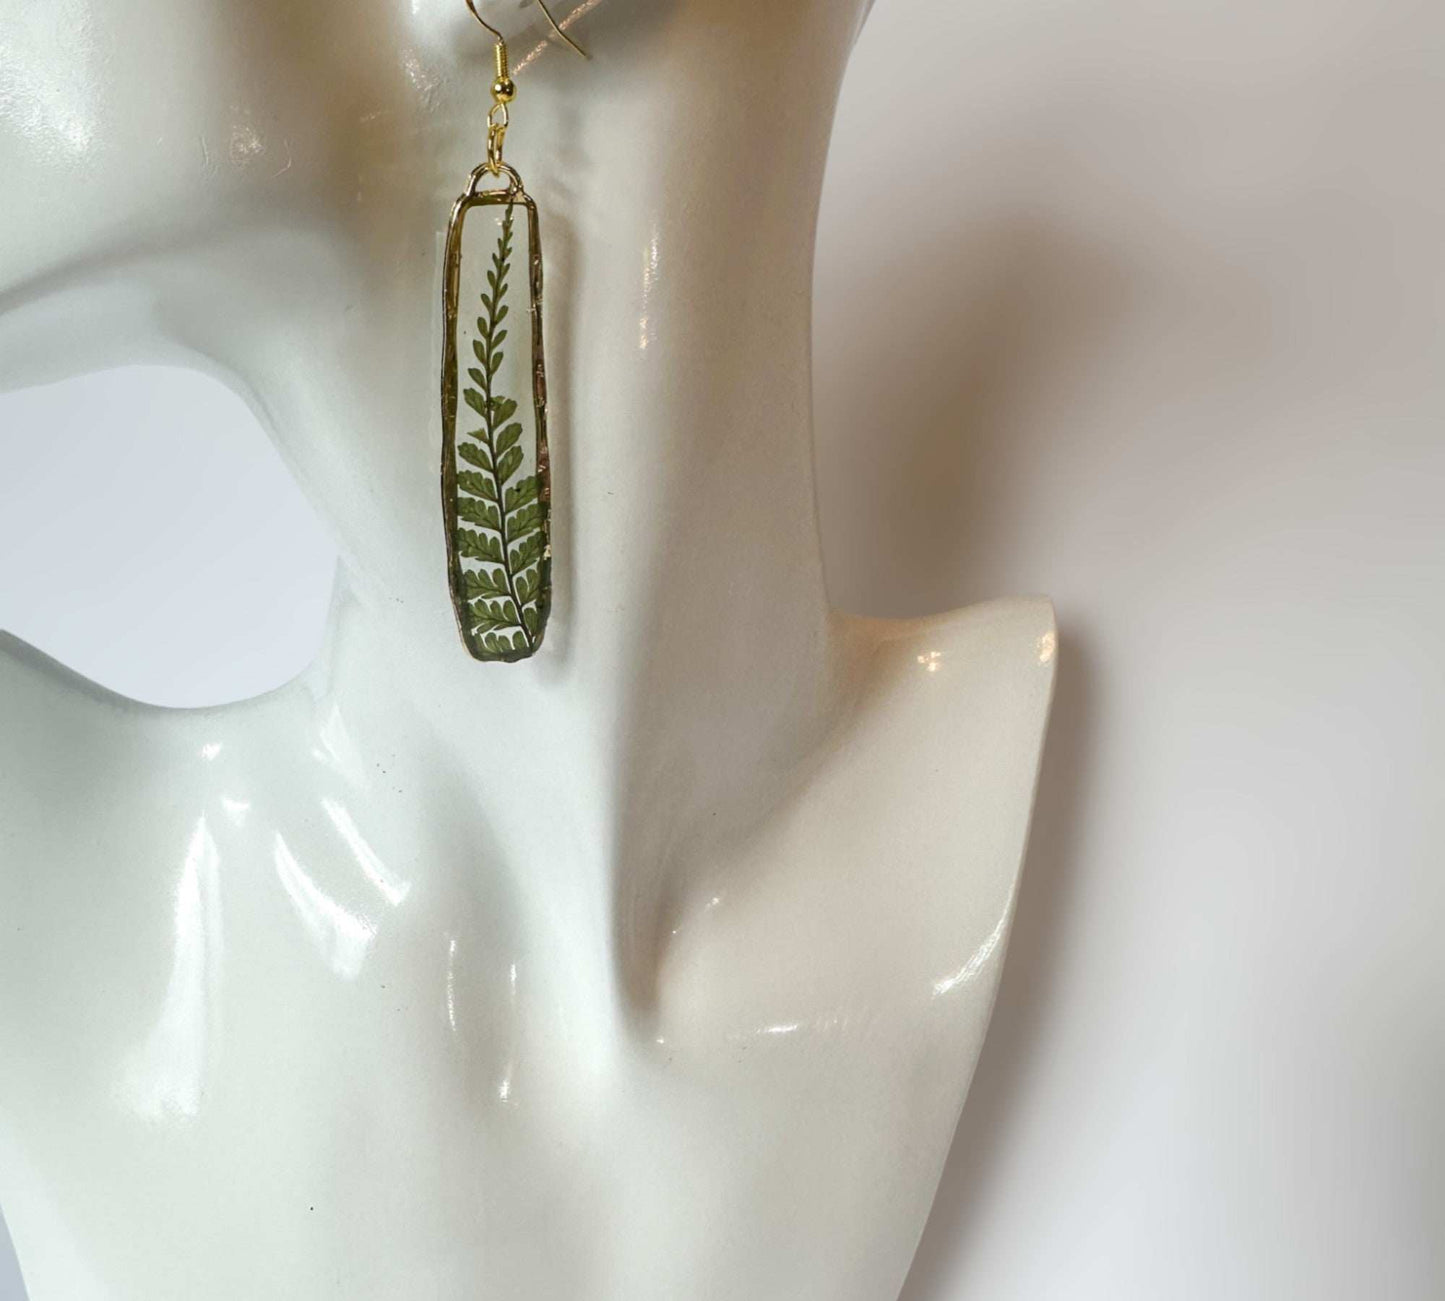 Fern Cascade Earrings - Minimalistic Meets Boho Style - Pressed Ferns